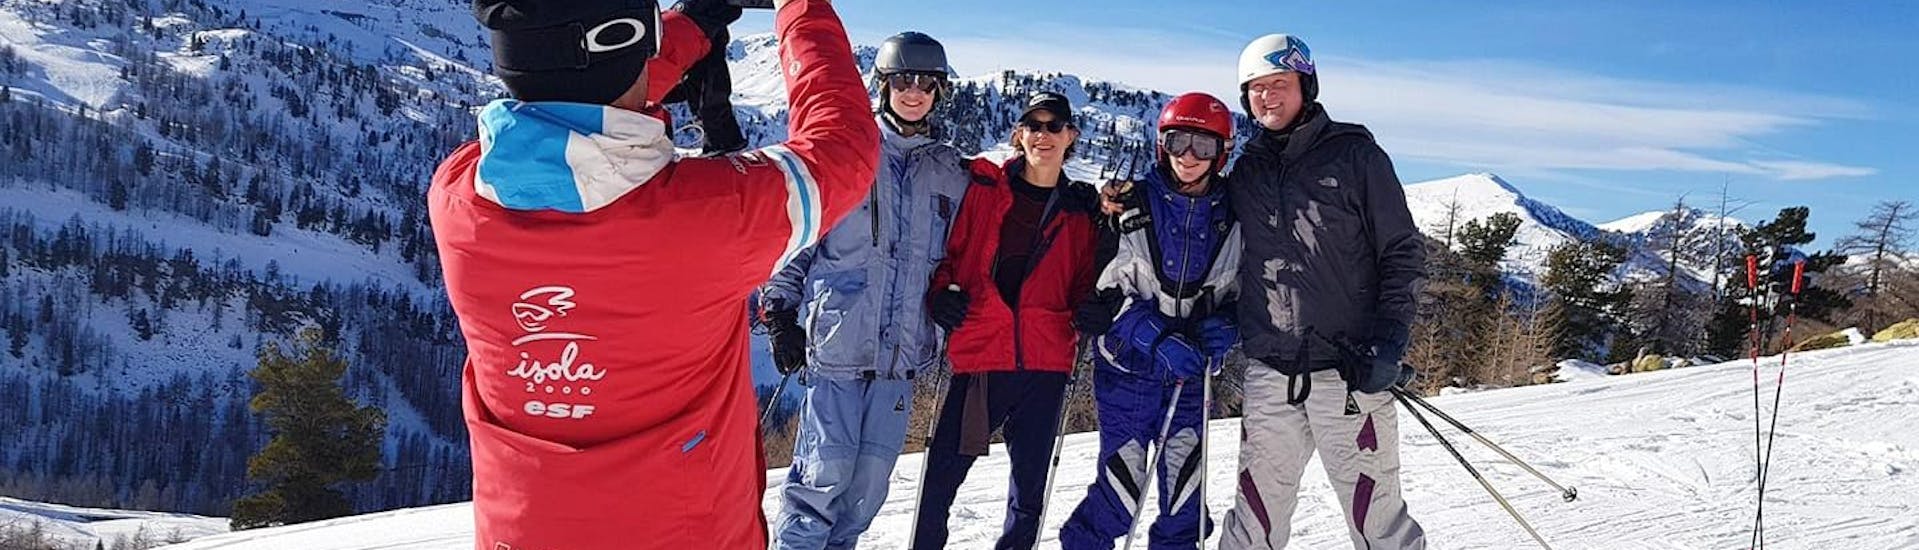 Un moniteur de ski de l'école de ski ESF Isola 2000 prend une photo de ses skieurs pendant leur Cours de ski Ados & Adultes pour Tous niveaux.